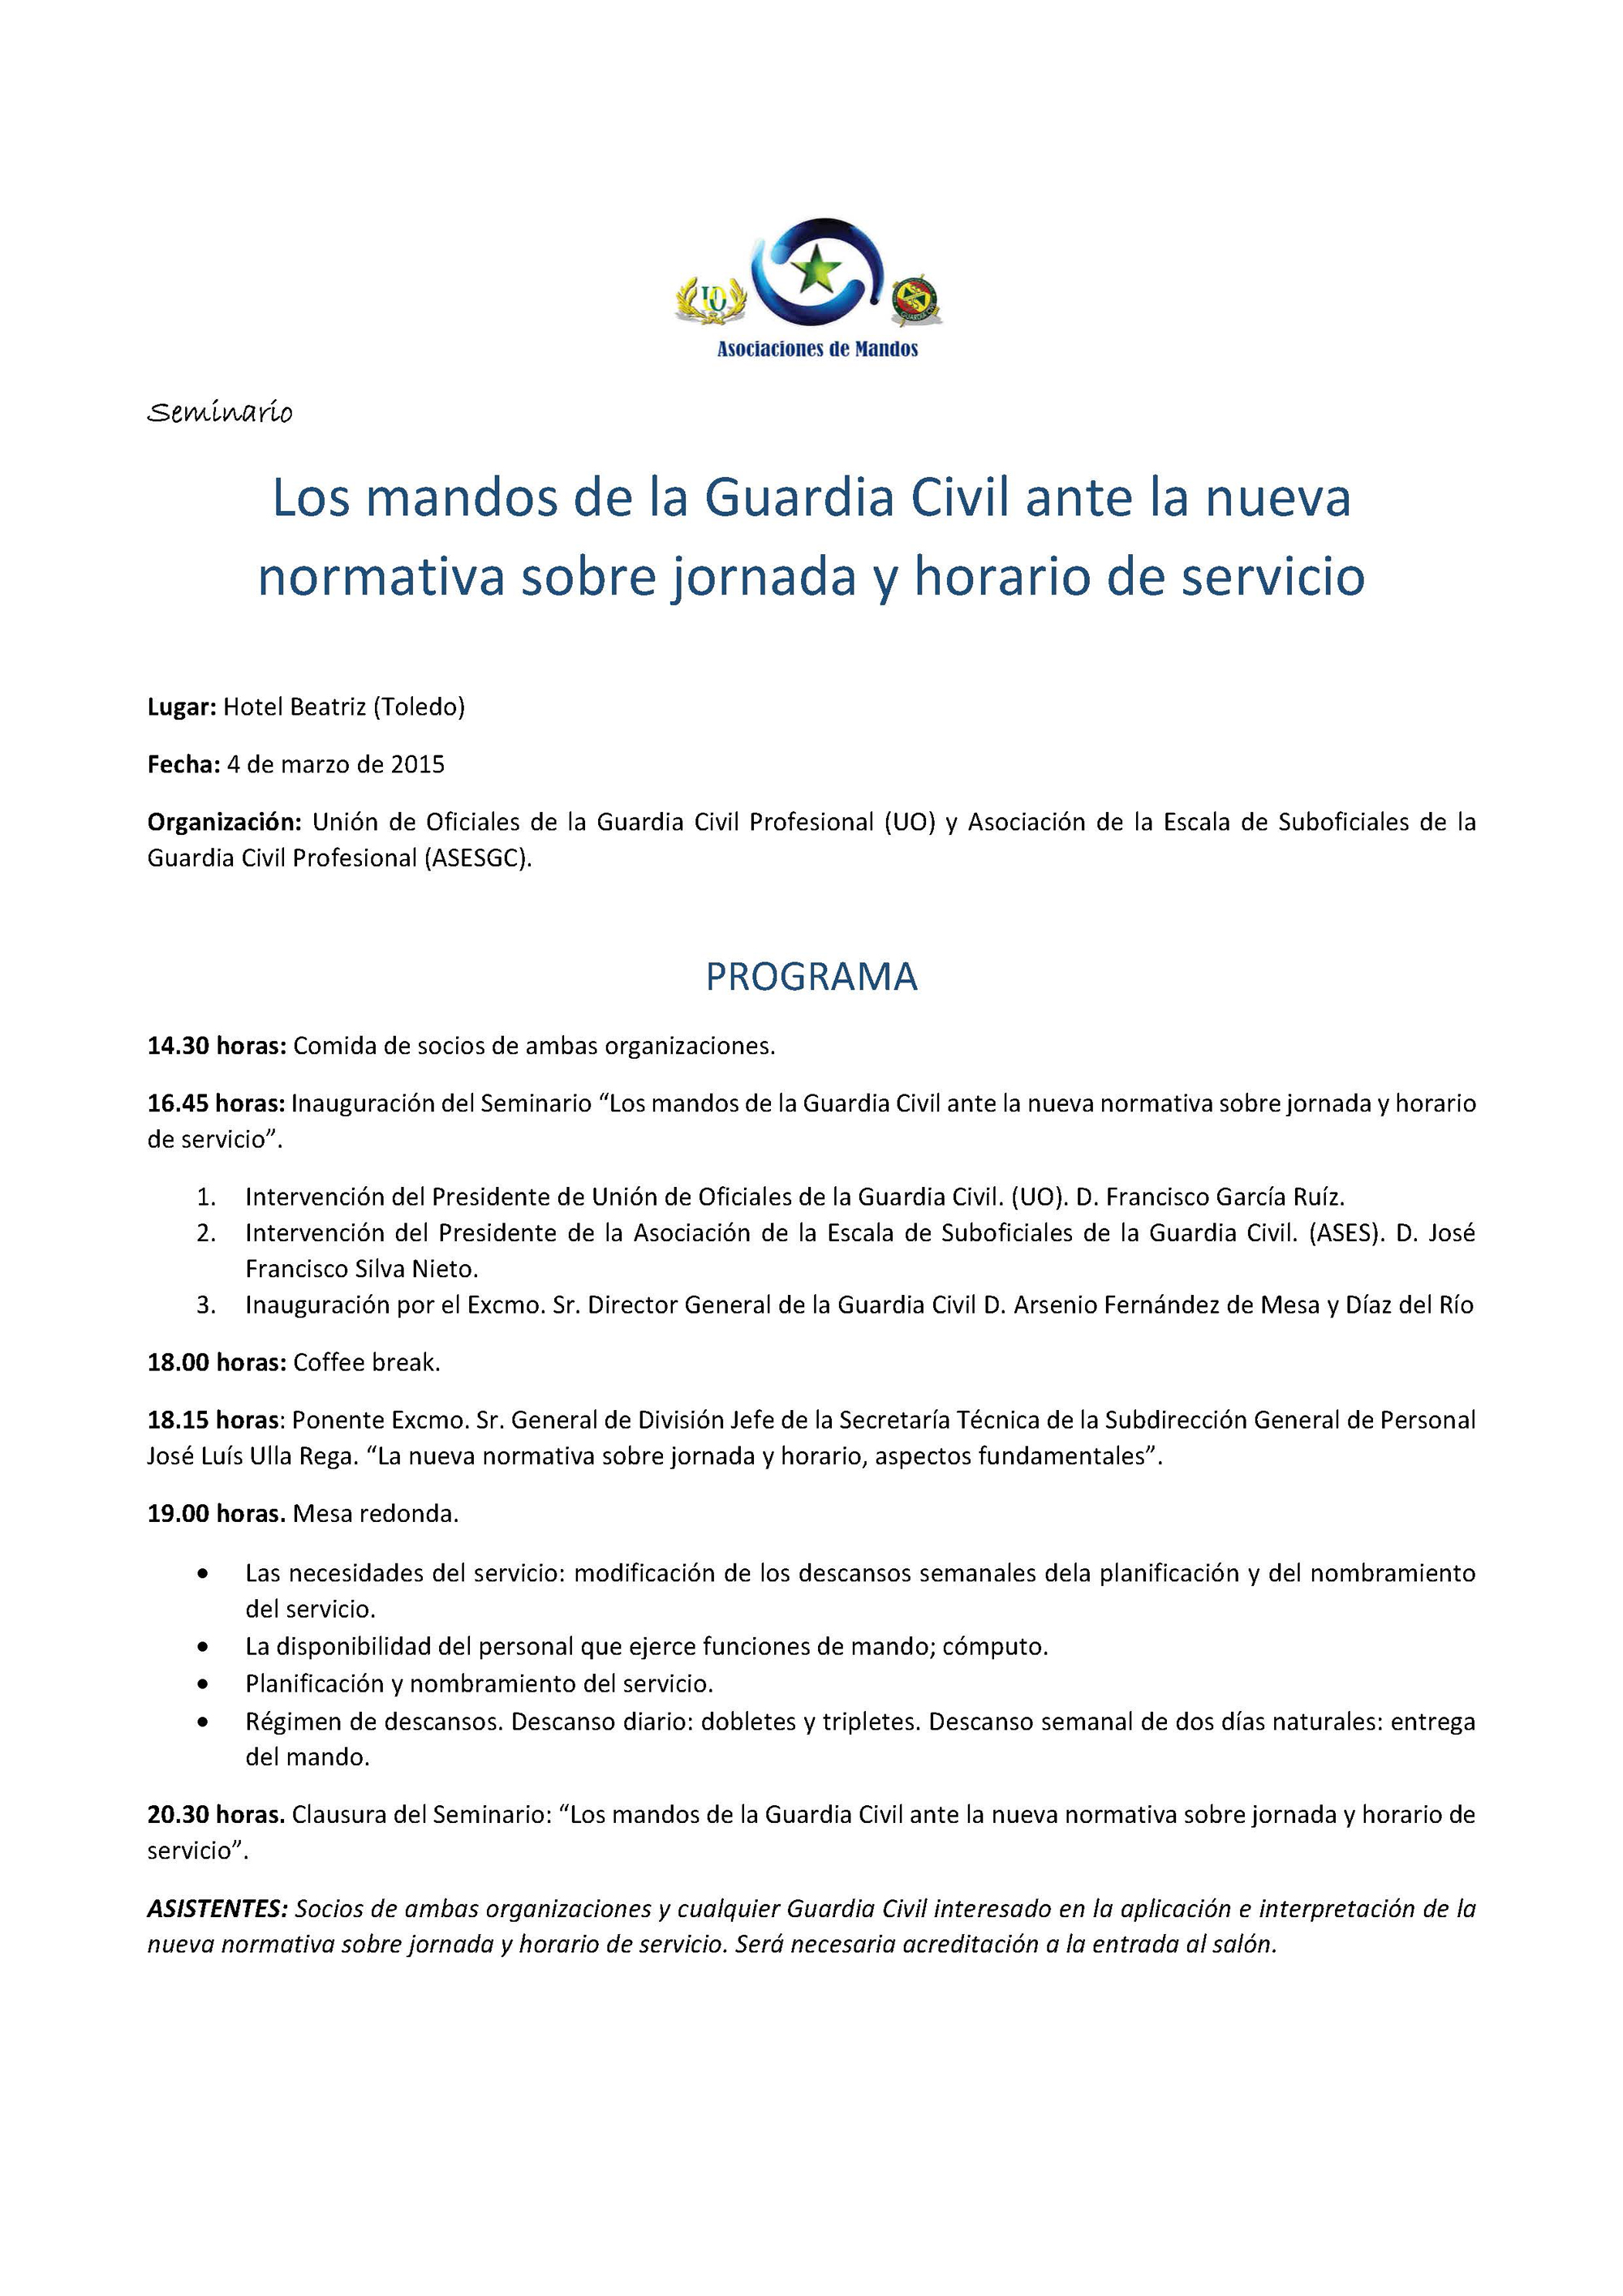 Programa_Seminario_Toledo_WEB.jpg